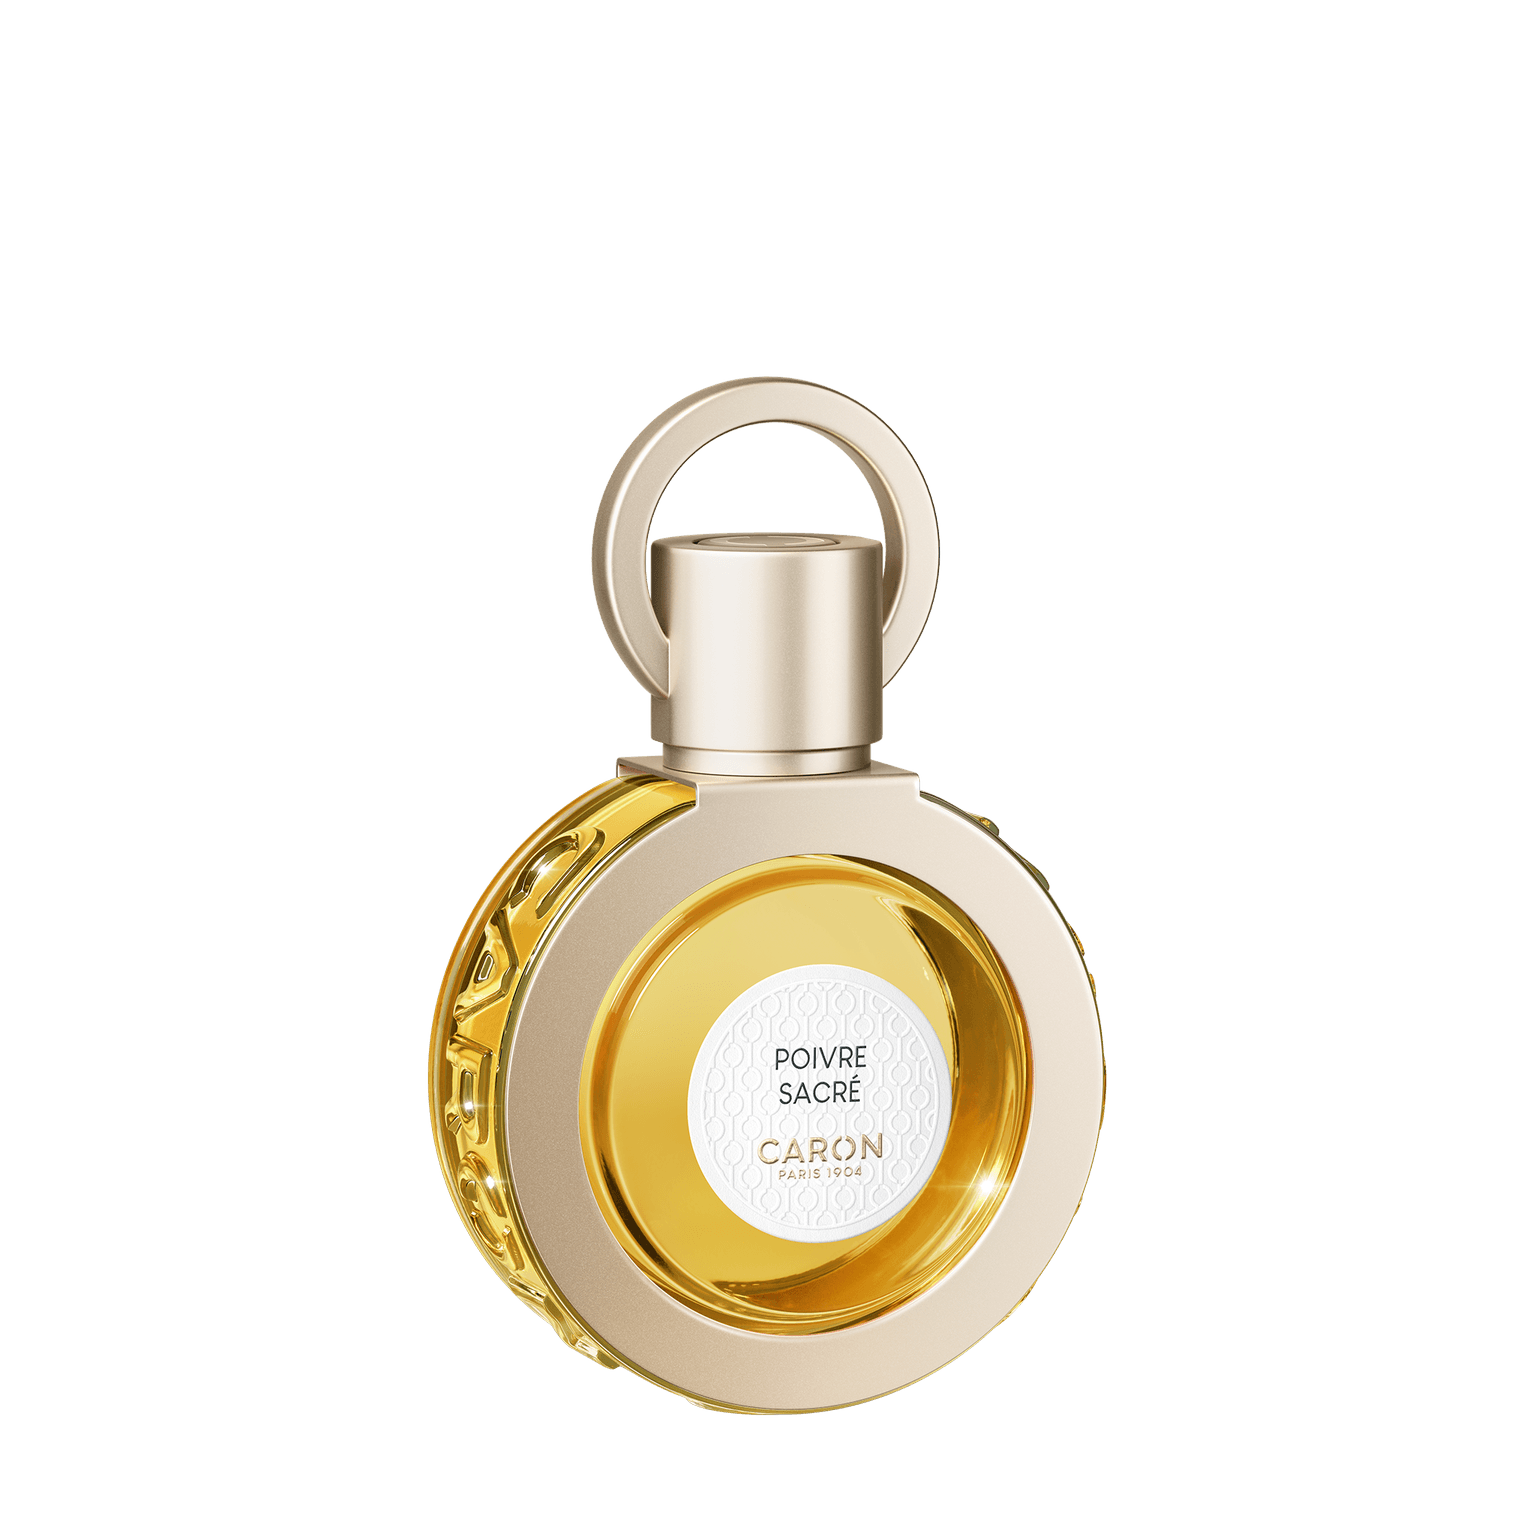 Caron Poivre Sacre 50ml | Perfume Lounge